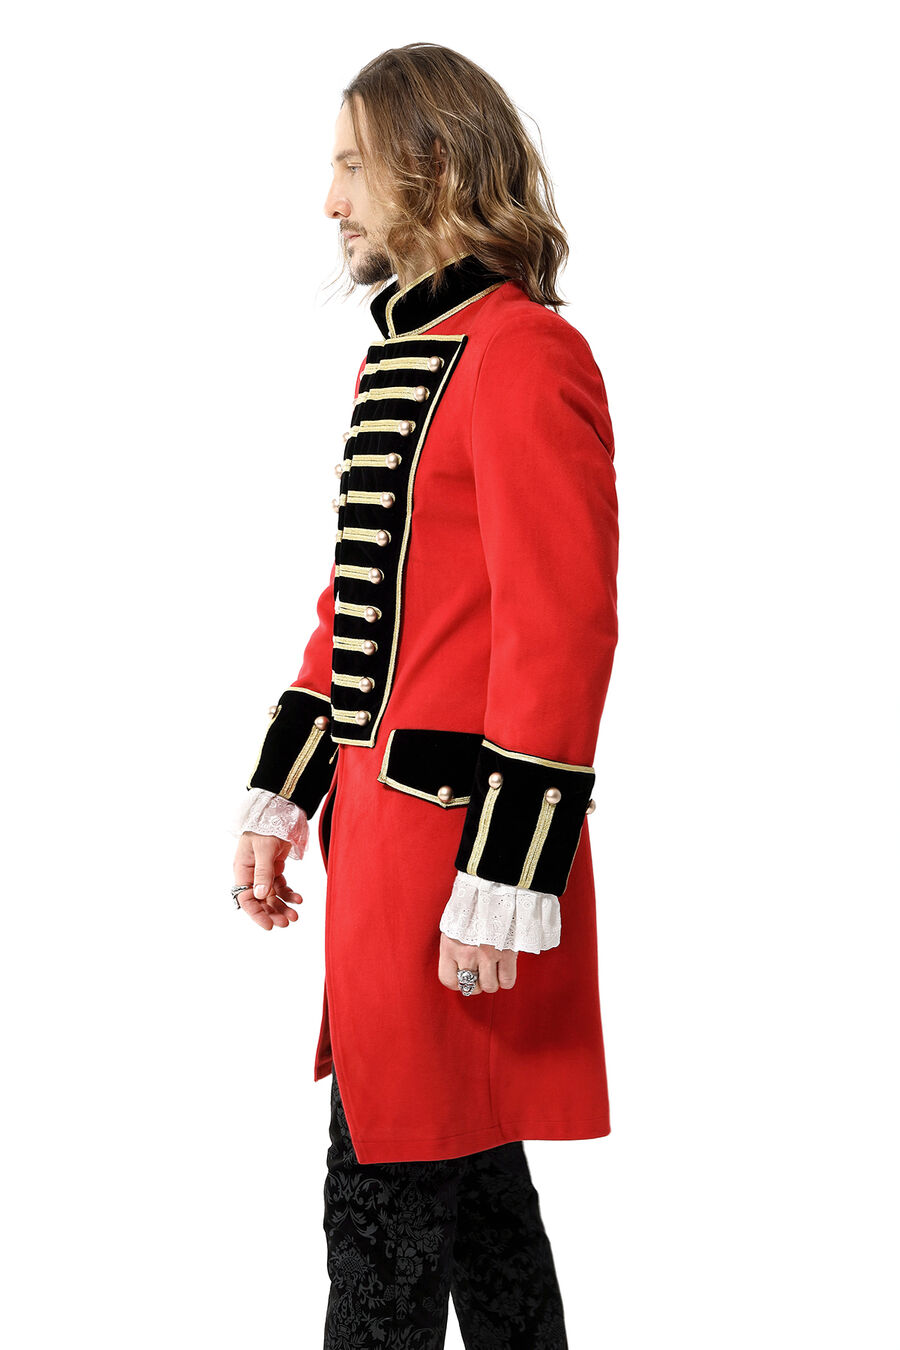 photo n°4 : Manteau officier Style britannique